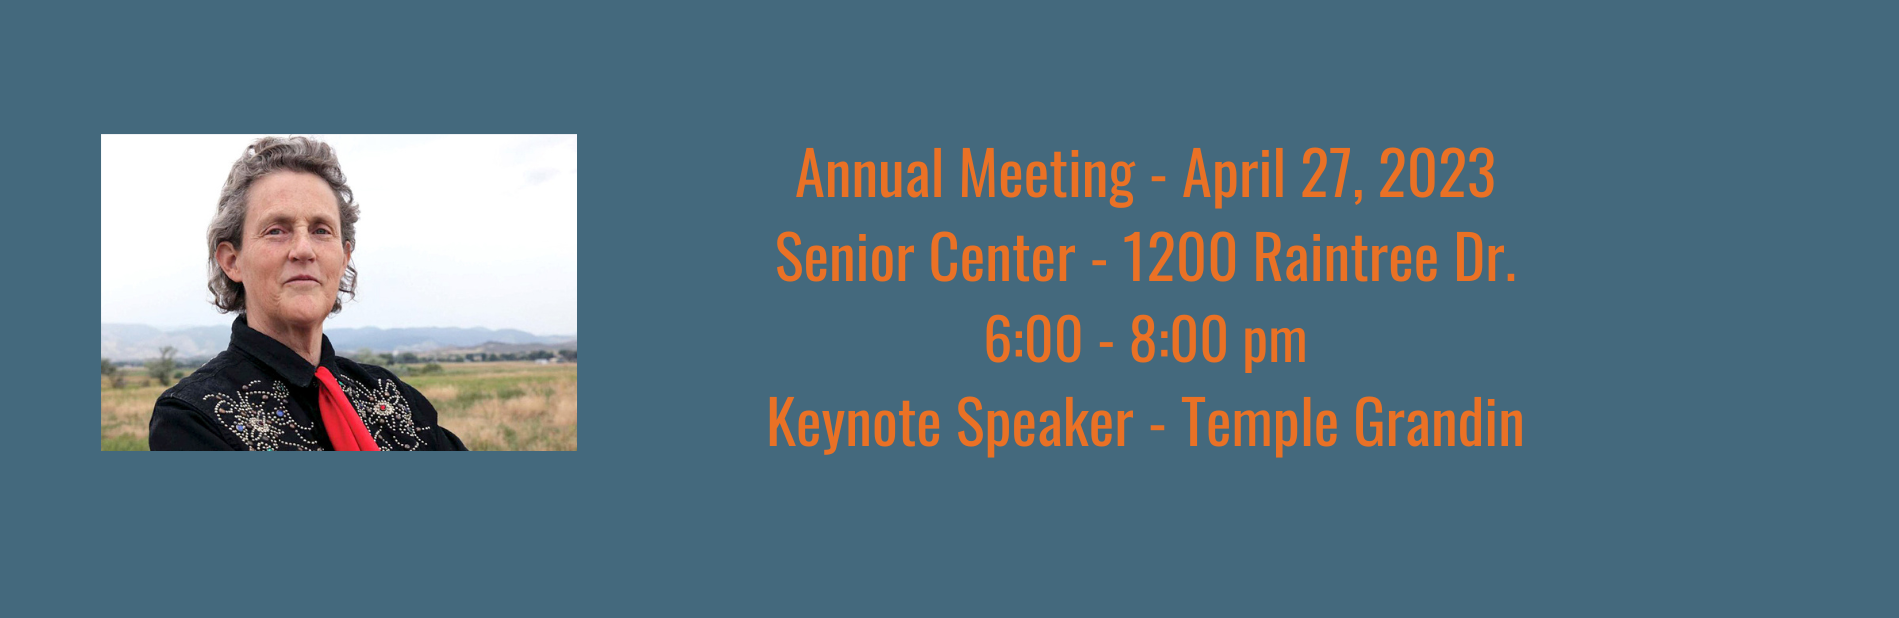 Annual Meeting Information Keynote Speaker Temple Grandin